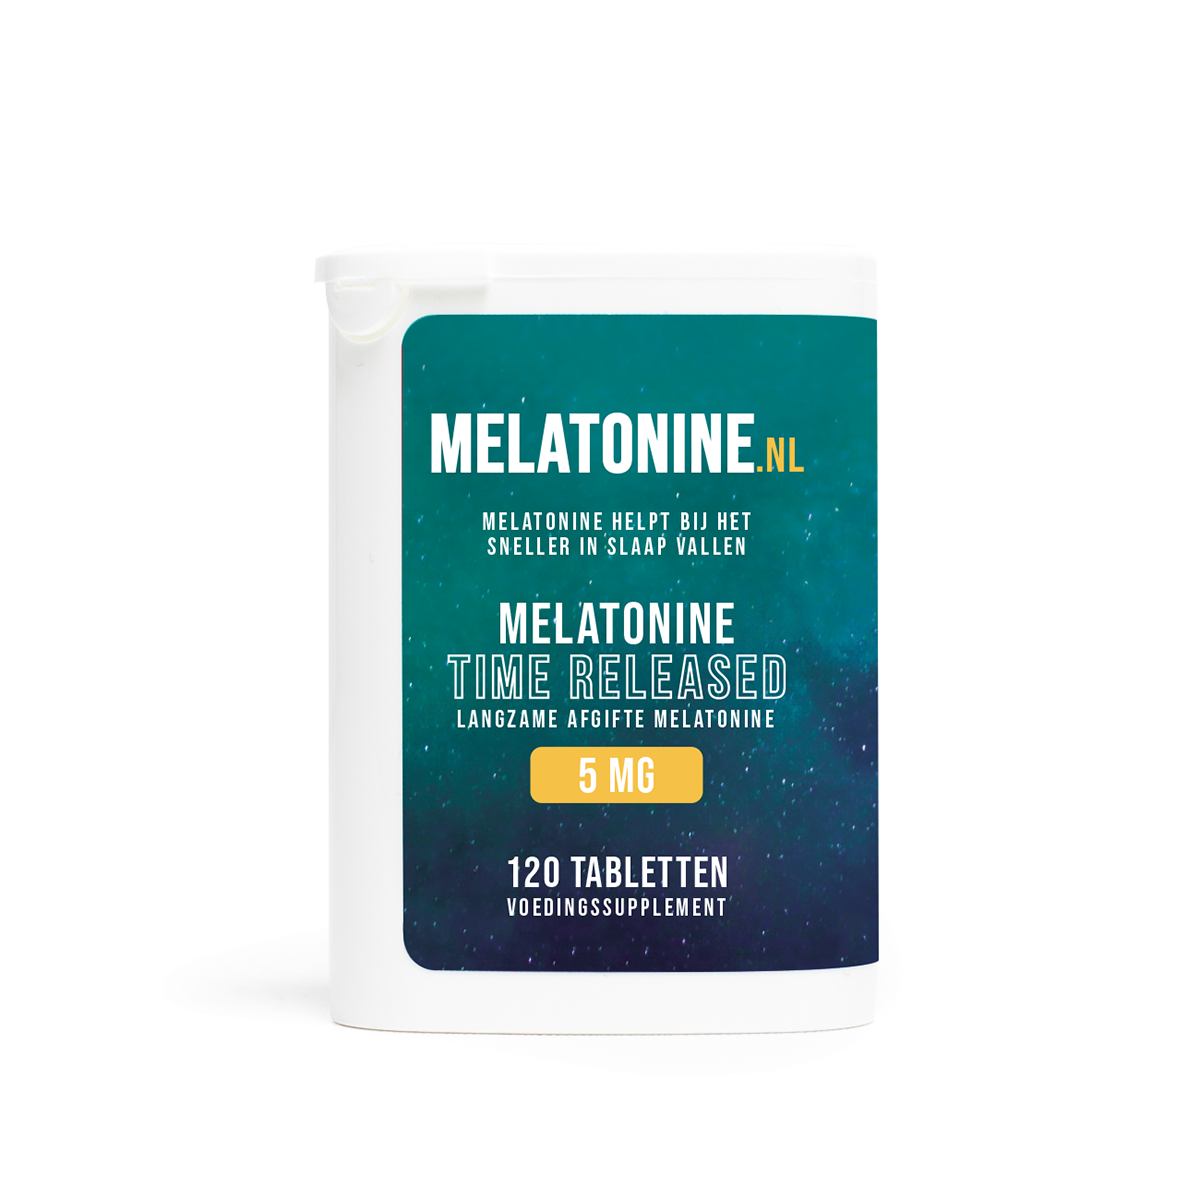 Melatonine 5 mg Time Released 120 tabletten